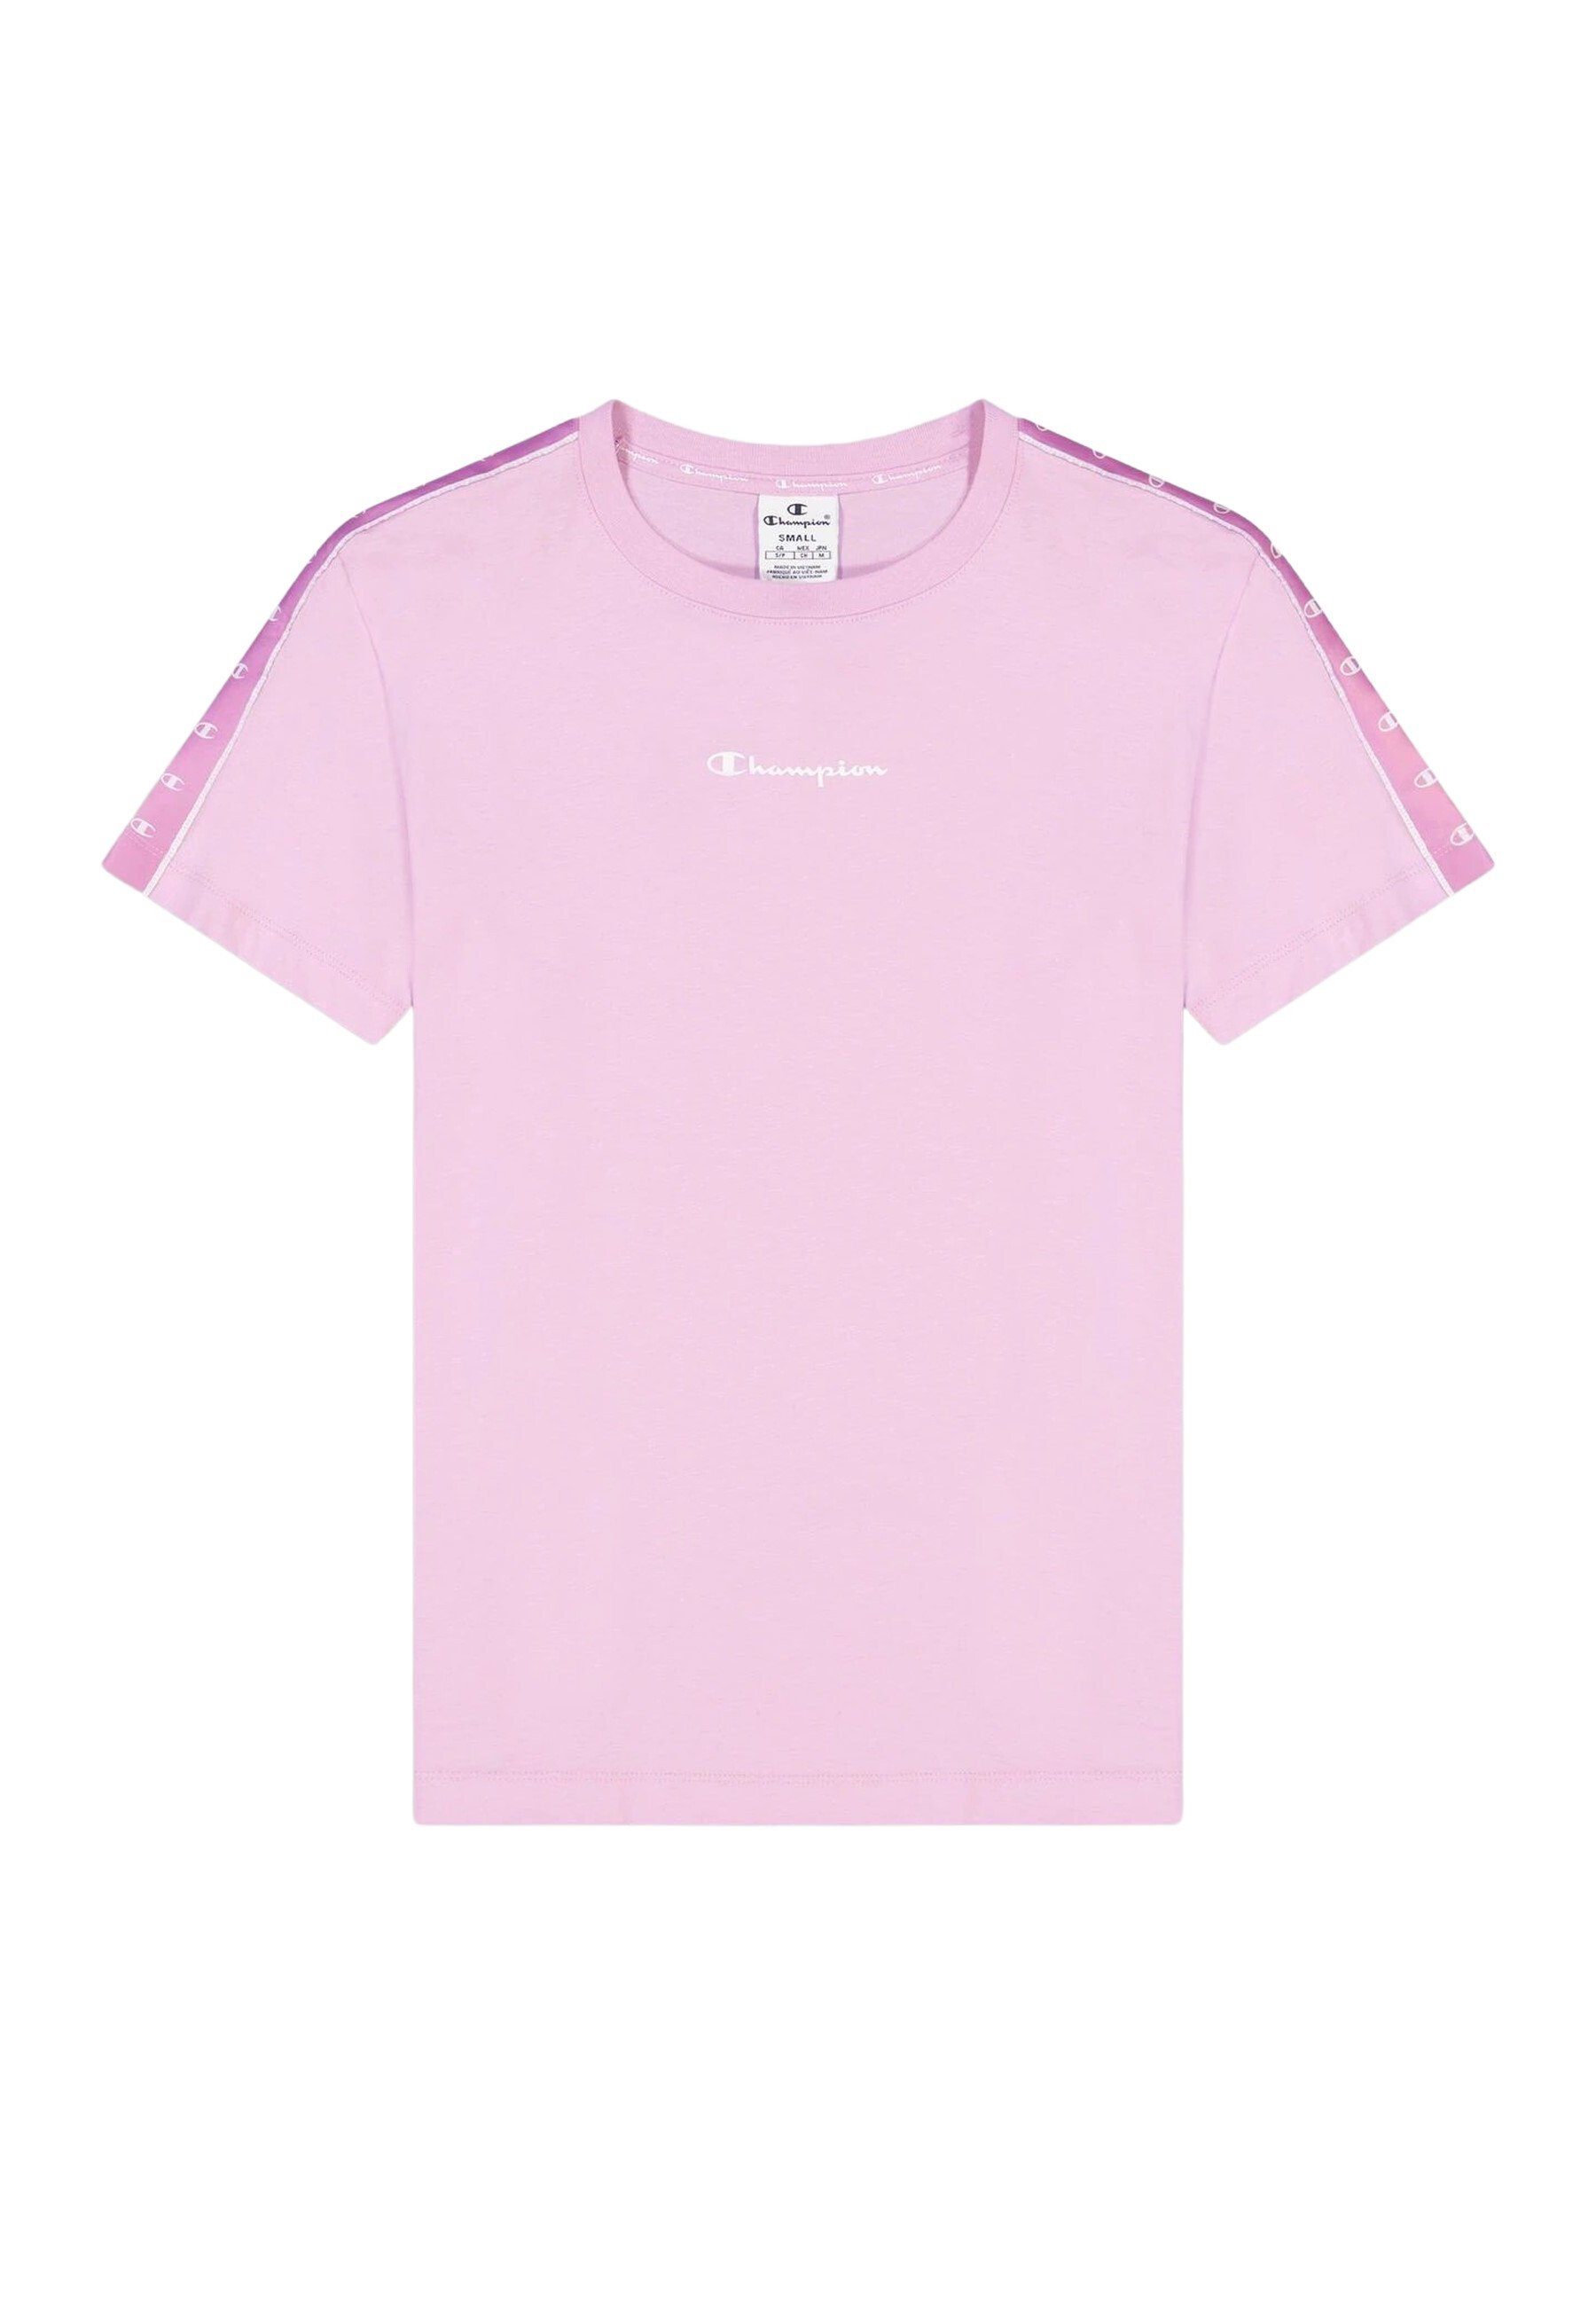 Champion T-Shirt Shirt Rundhals-T-Shirt pink aus mit Baumwolle